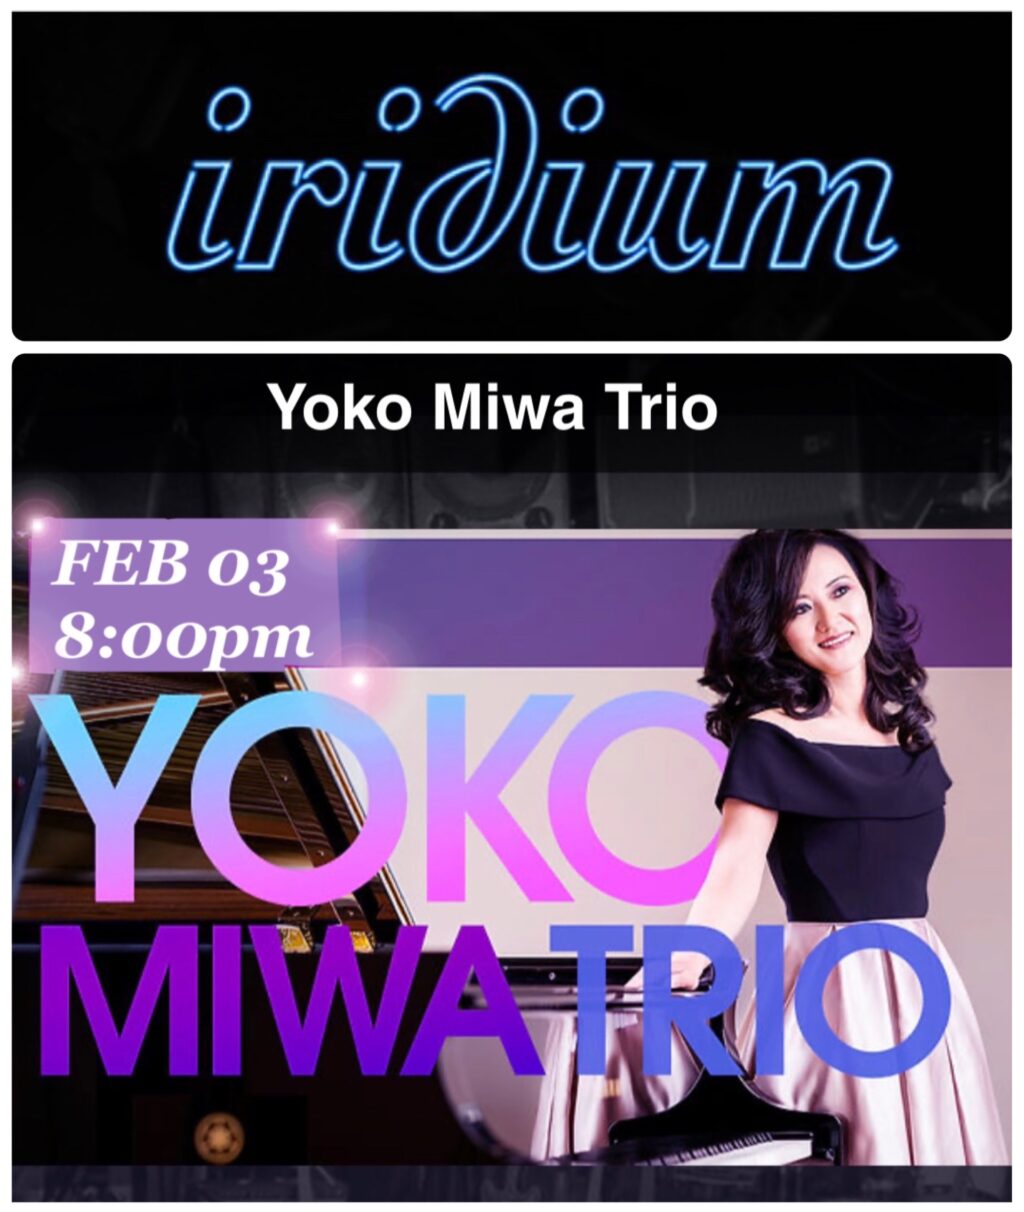 Yoko Miwa Trio at The Iridium in NYC